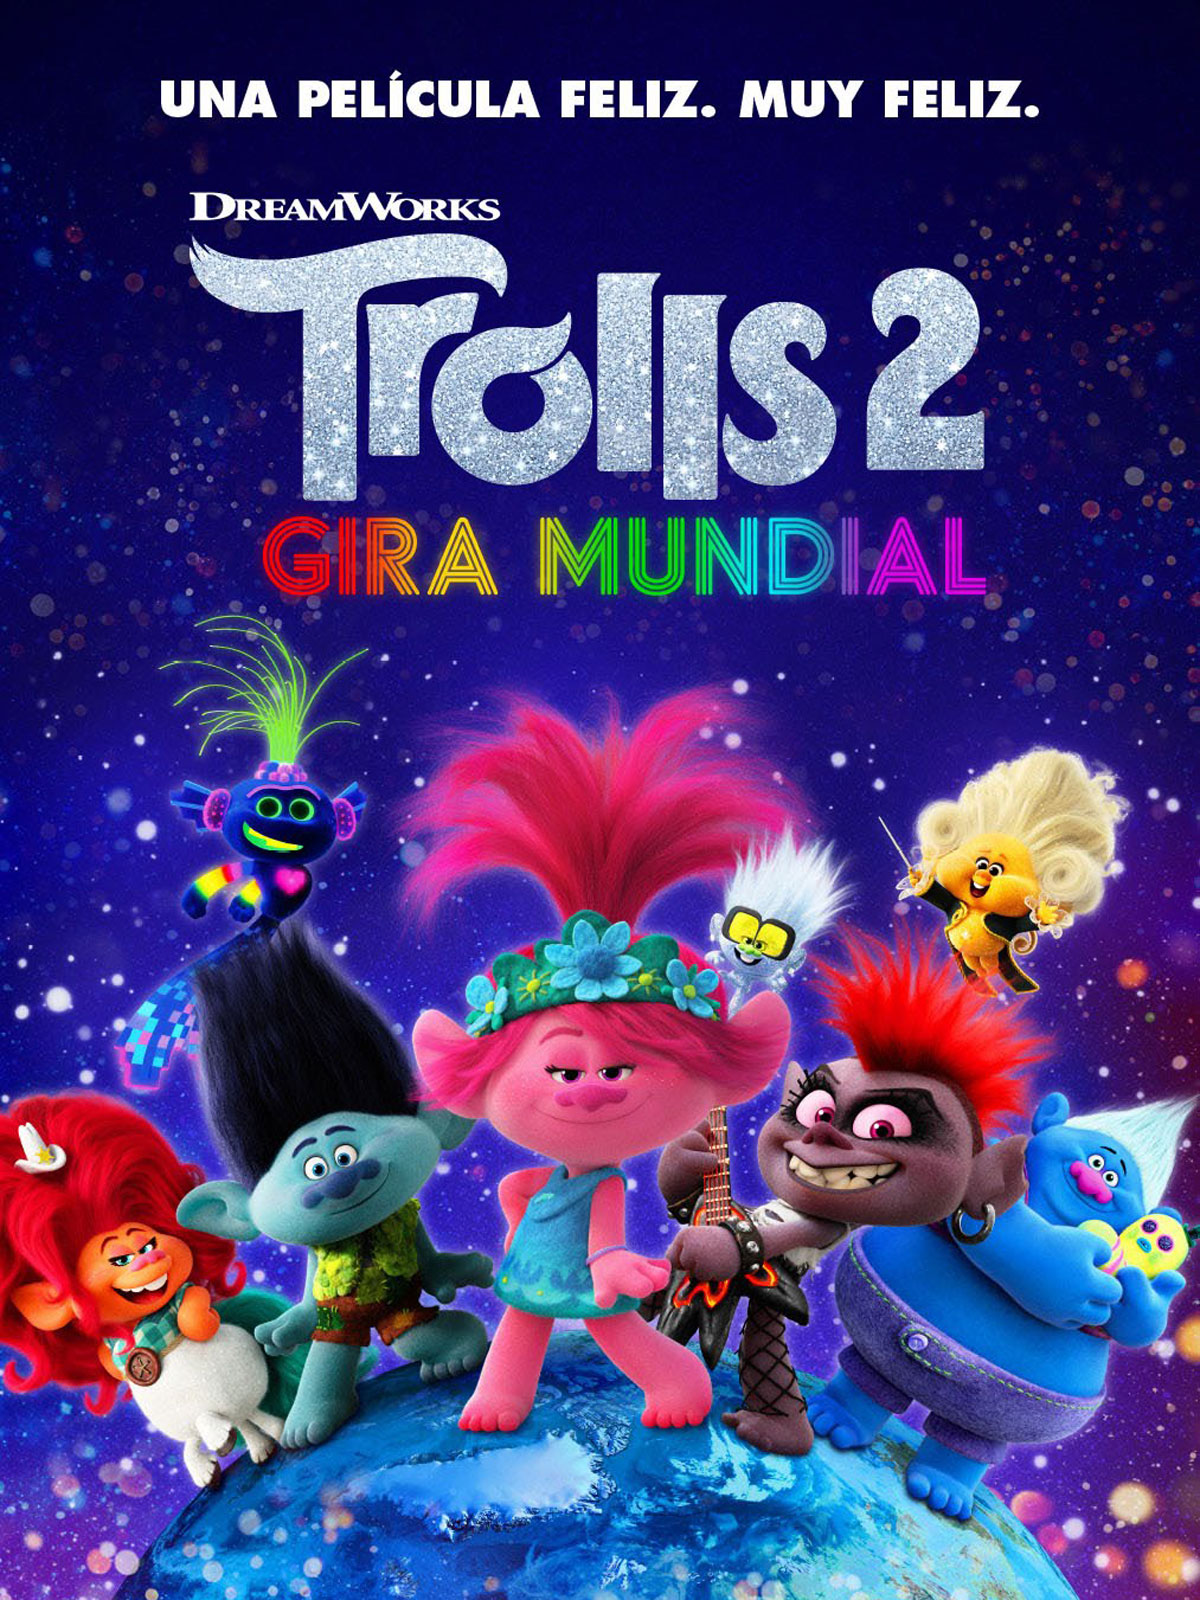 Kinépolis Granada estrena Trolls2 dentro de su programa Kinépolis Family